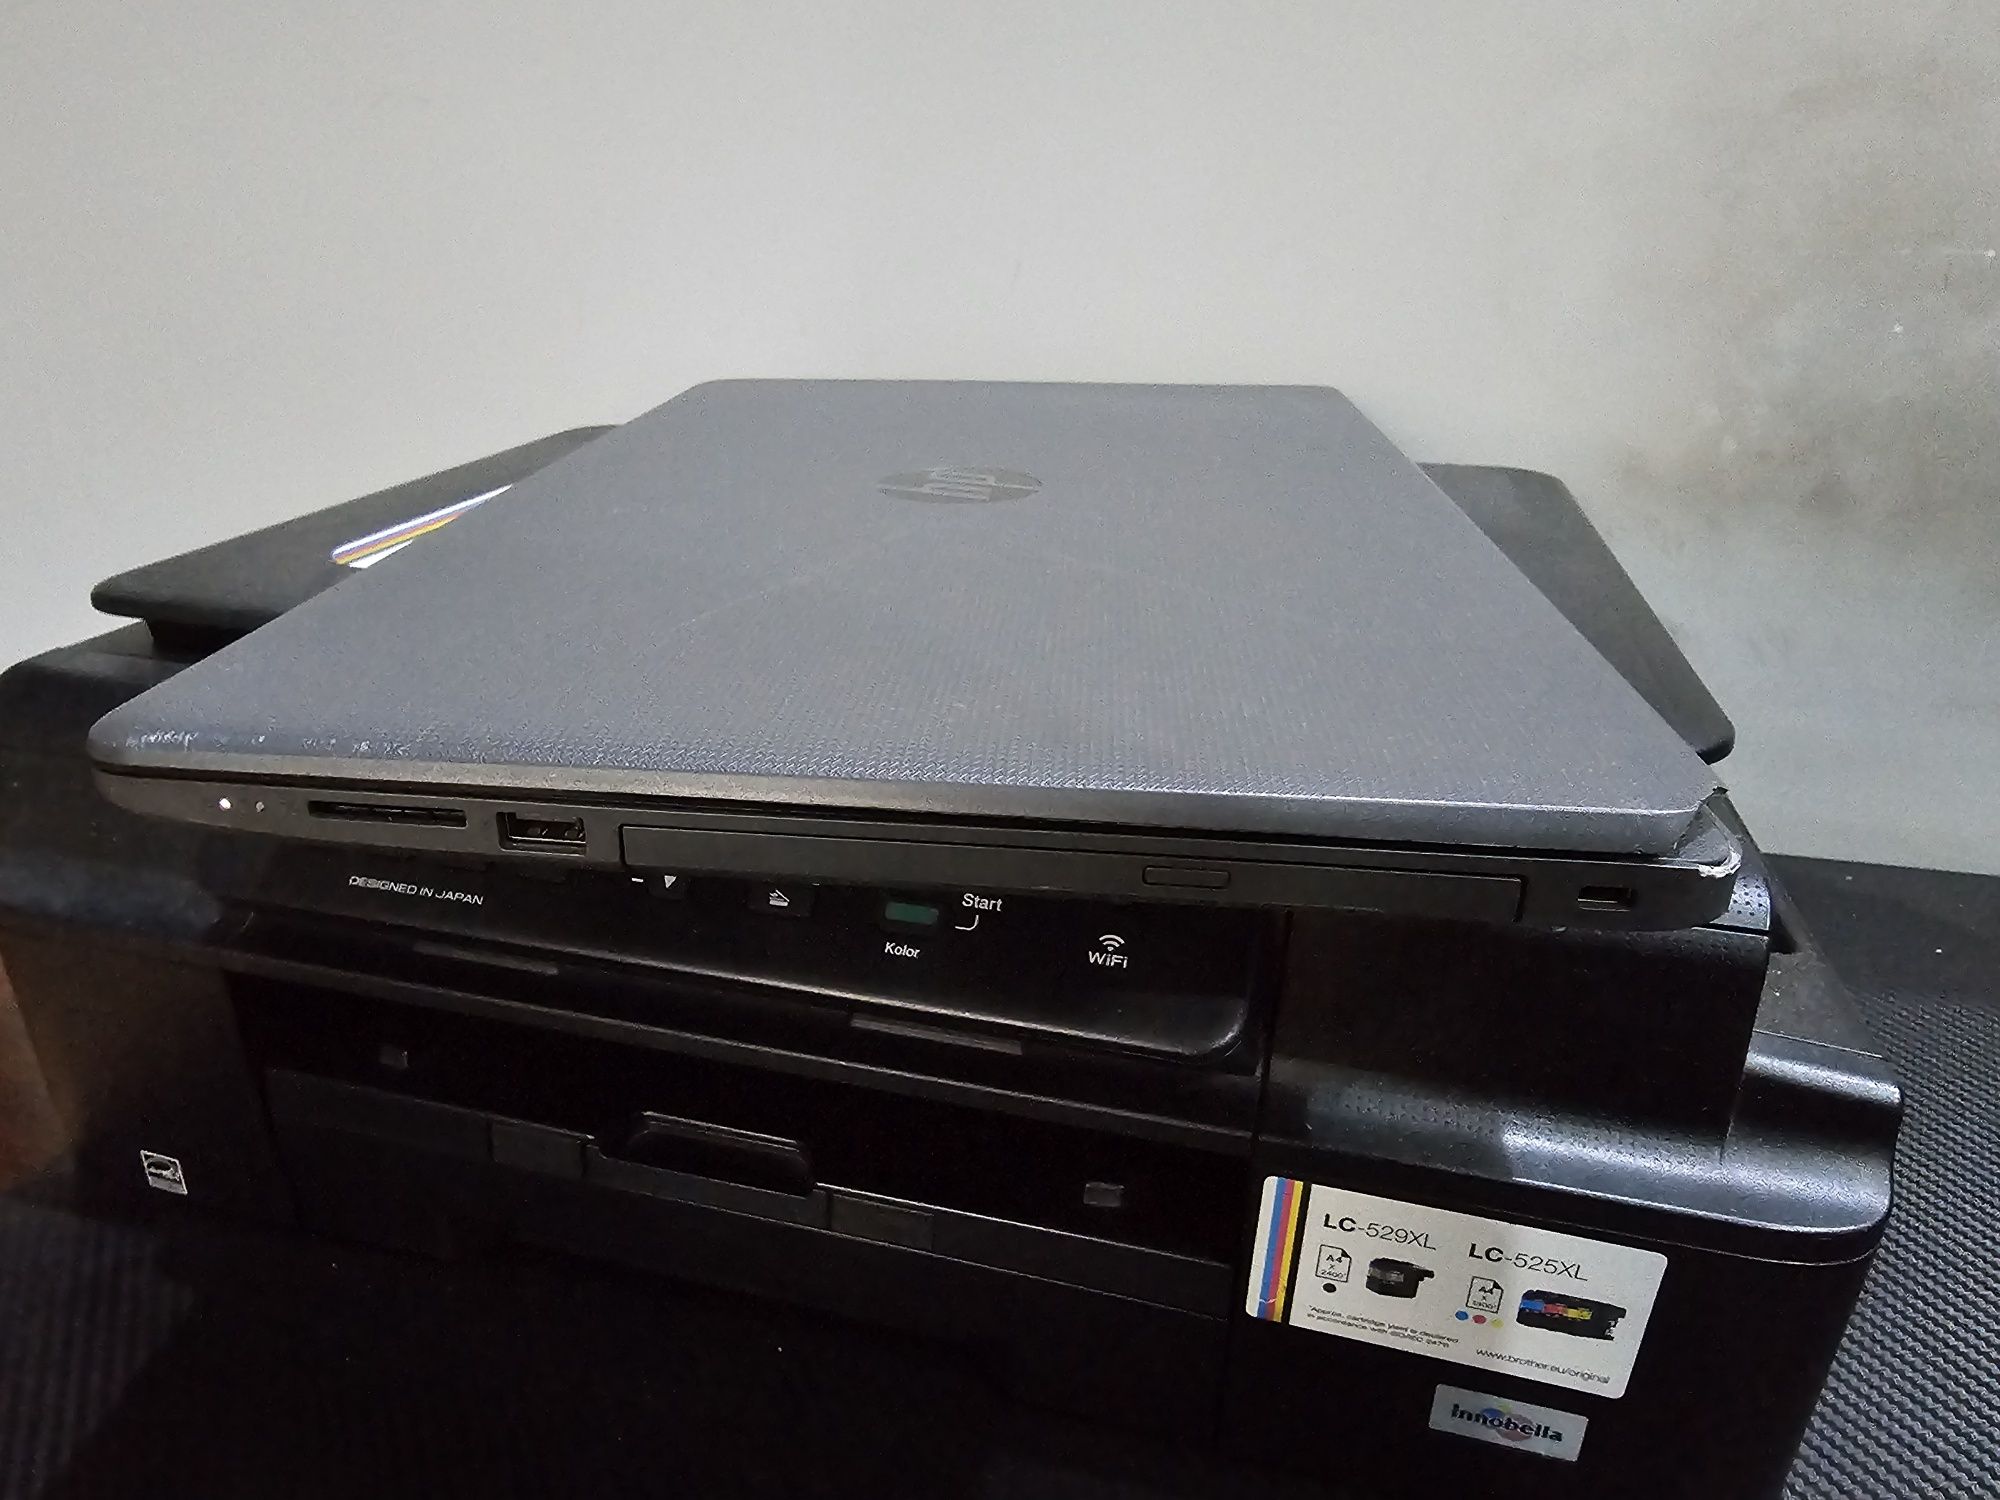 Laptop HP 255 G6 AMD 8gb ram dysk SSD bateria sprawna naped płyt 15,6